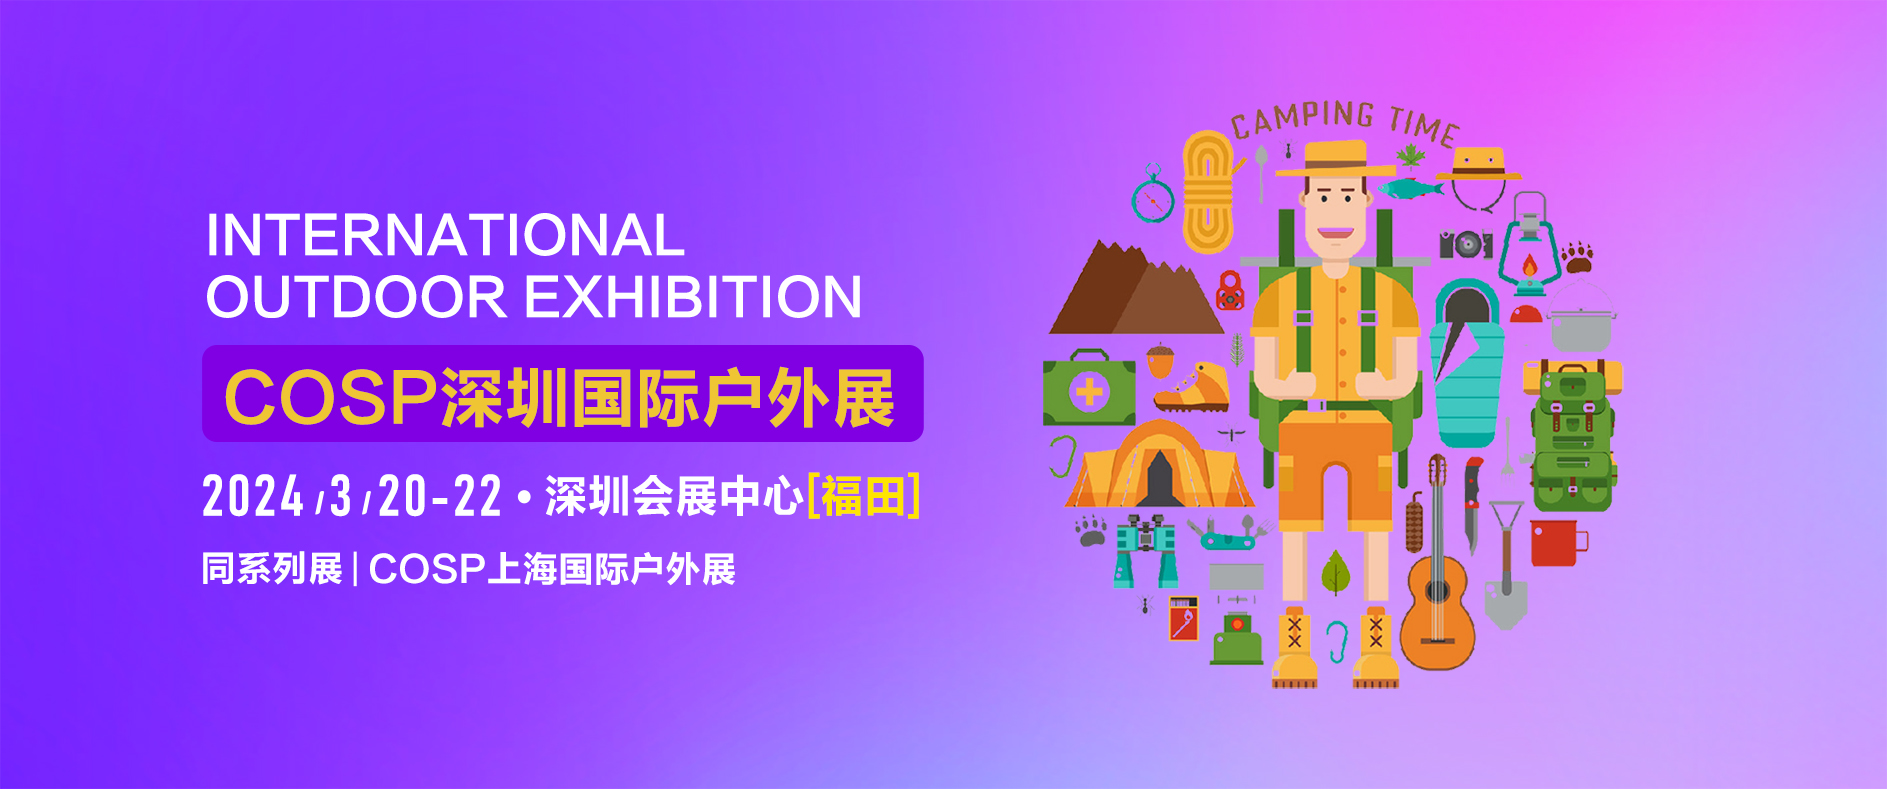 2023年COSP深圳国际户外运动展览会